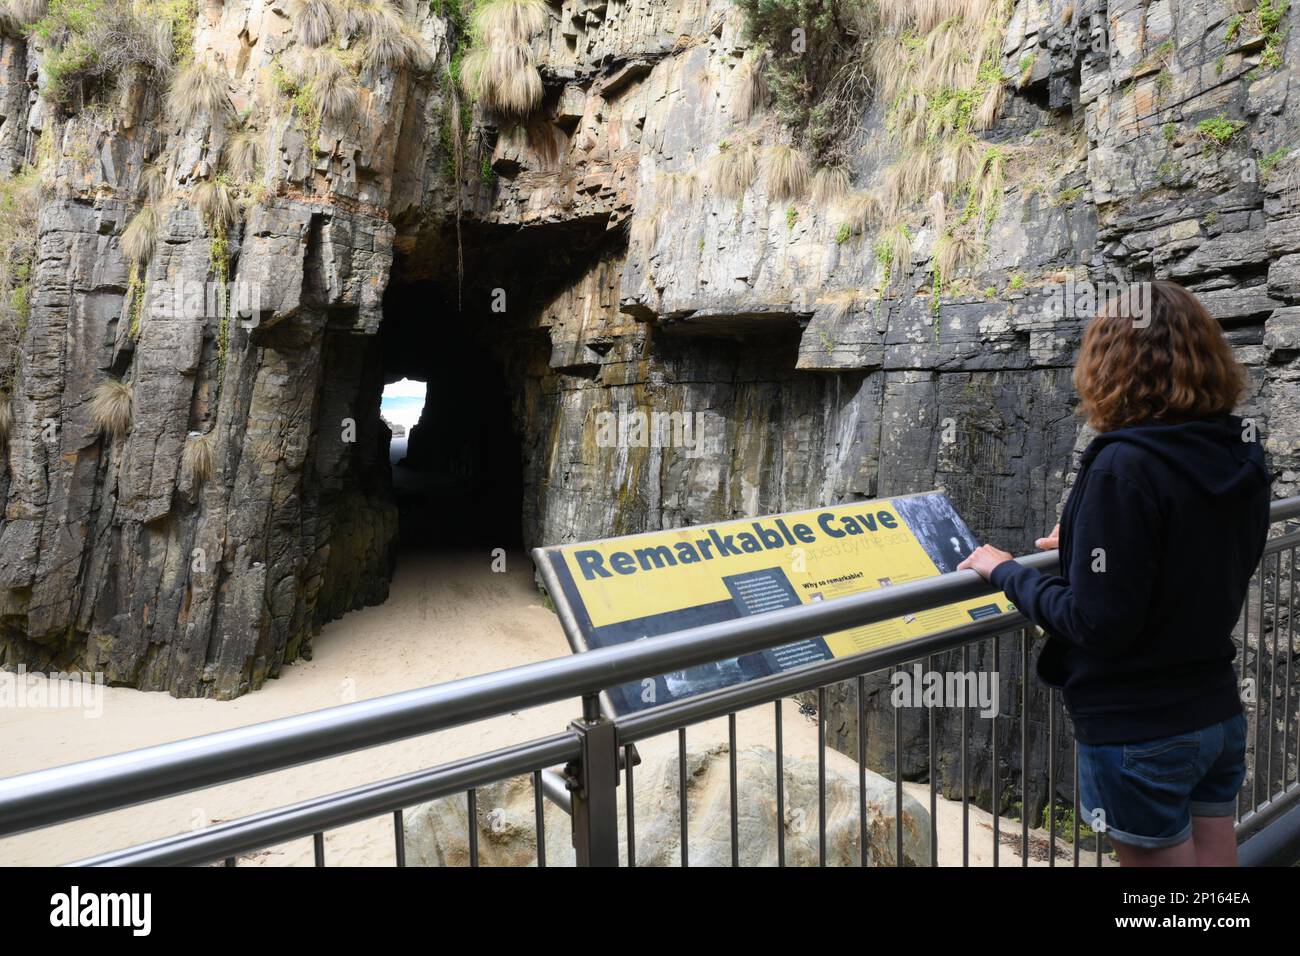 Grotte notevoli una grotta marina sotto le scogliere collega la riva al mare, scavata dalle onde. Un visitatore vede questa caratteristica geologica dalla piattaforma. Foto Stock